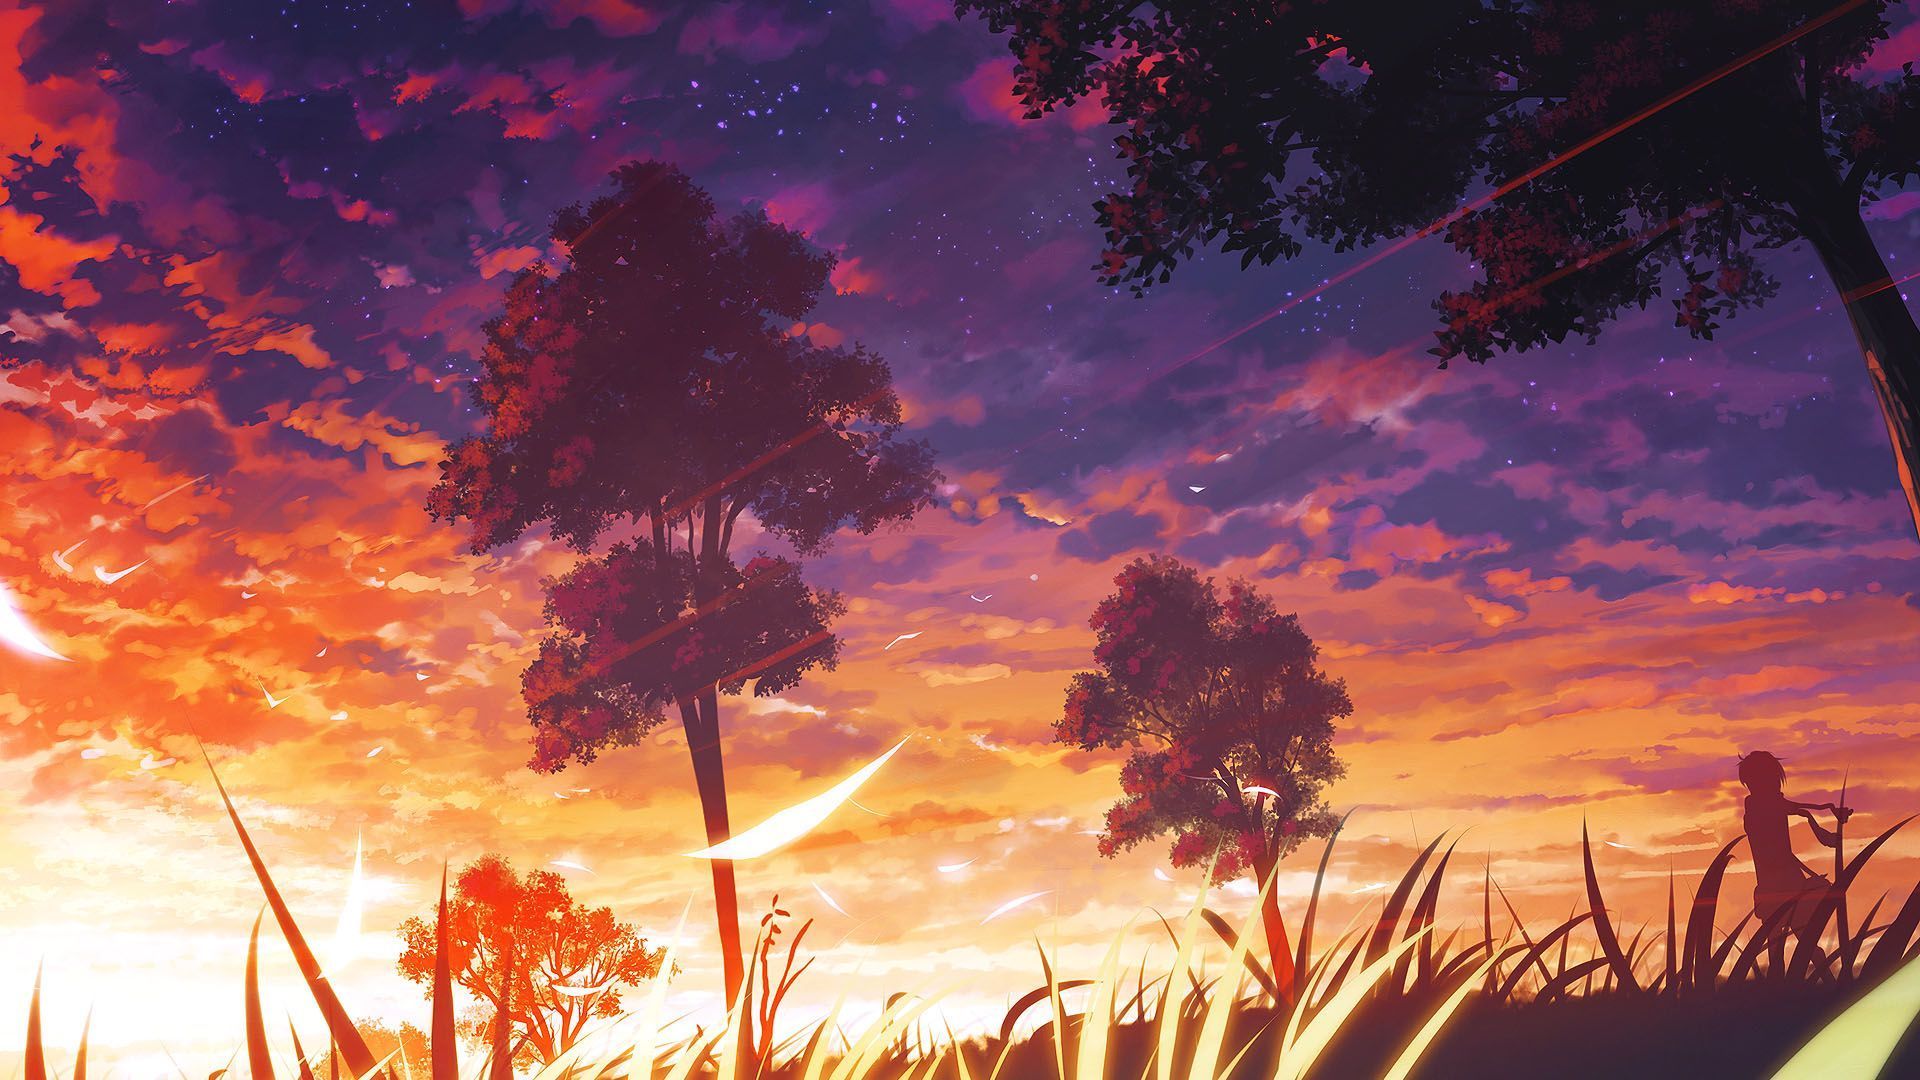 Anime Sunset Wallpaper. Scenery